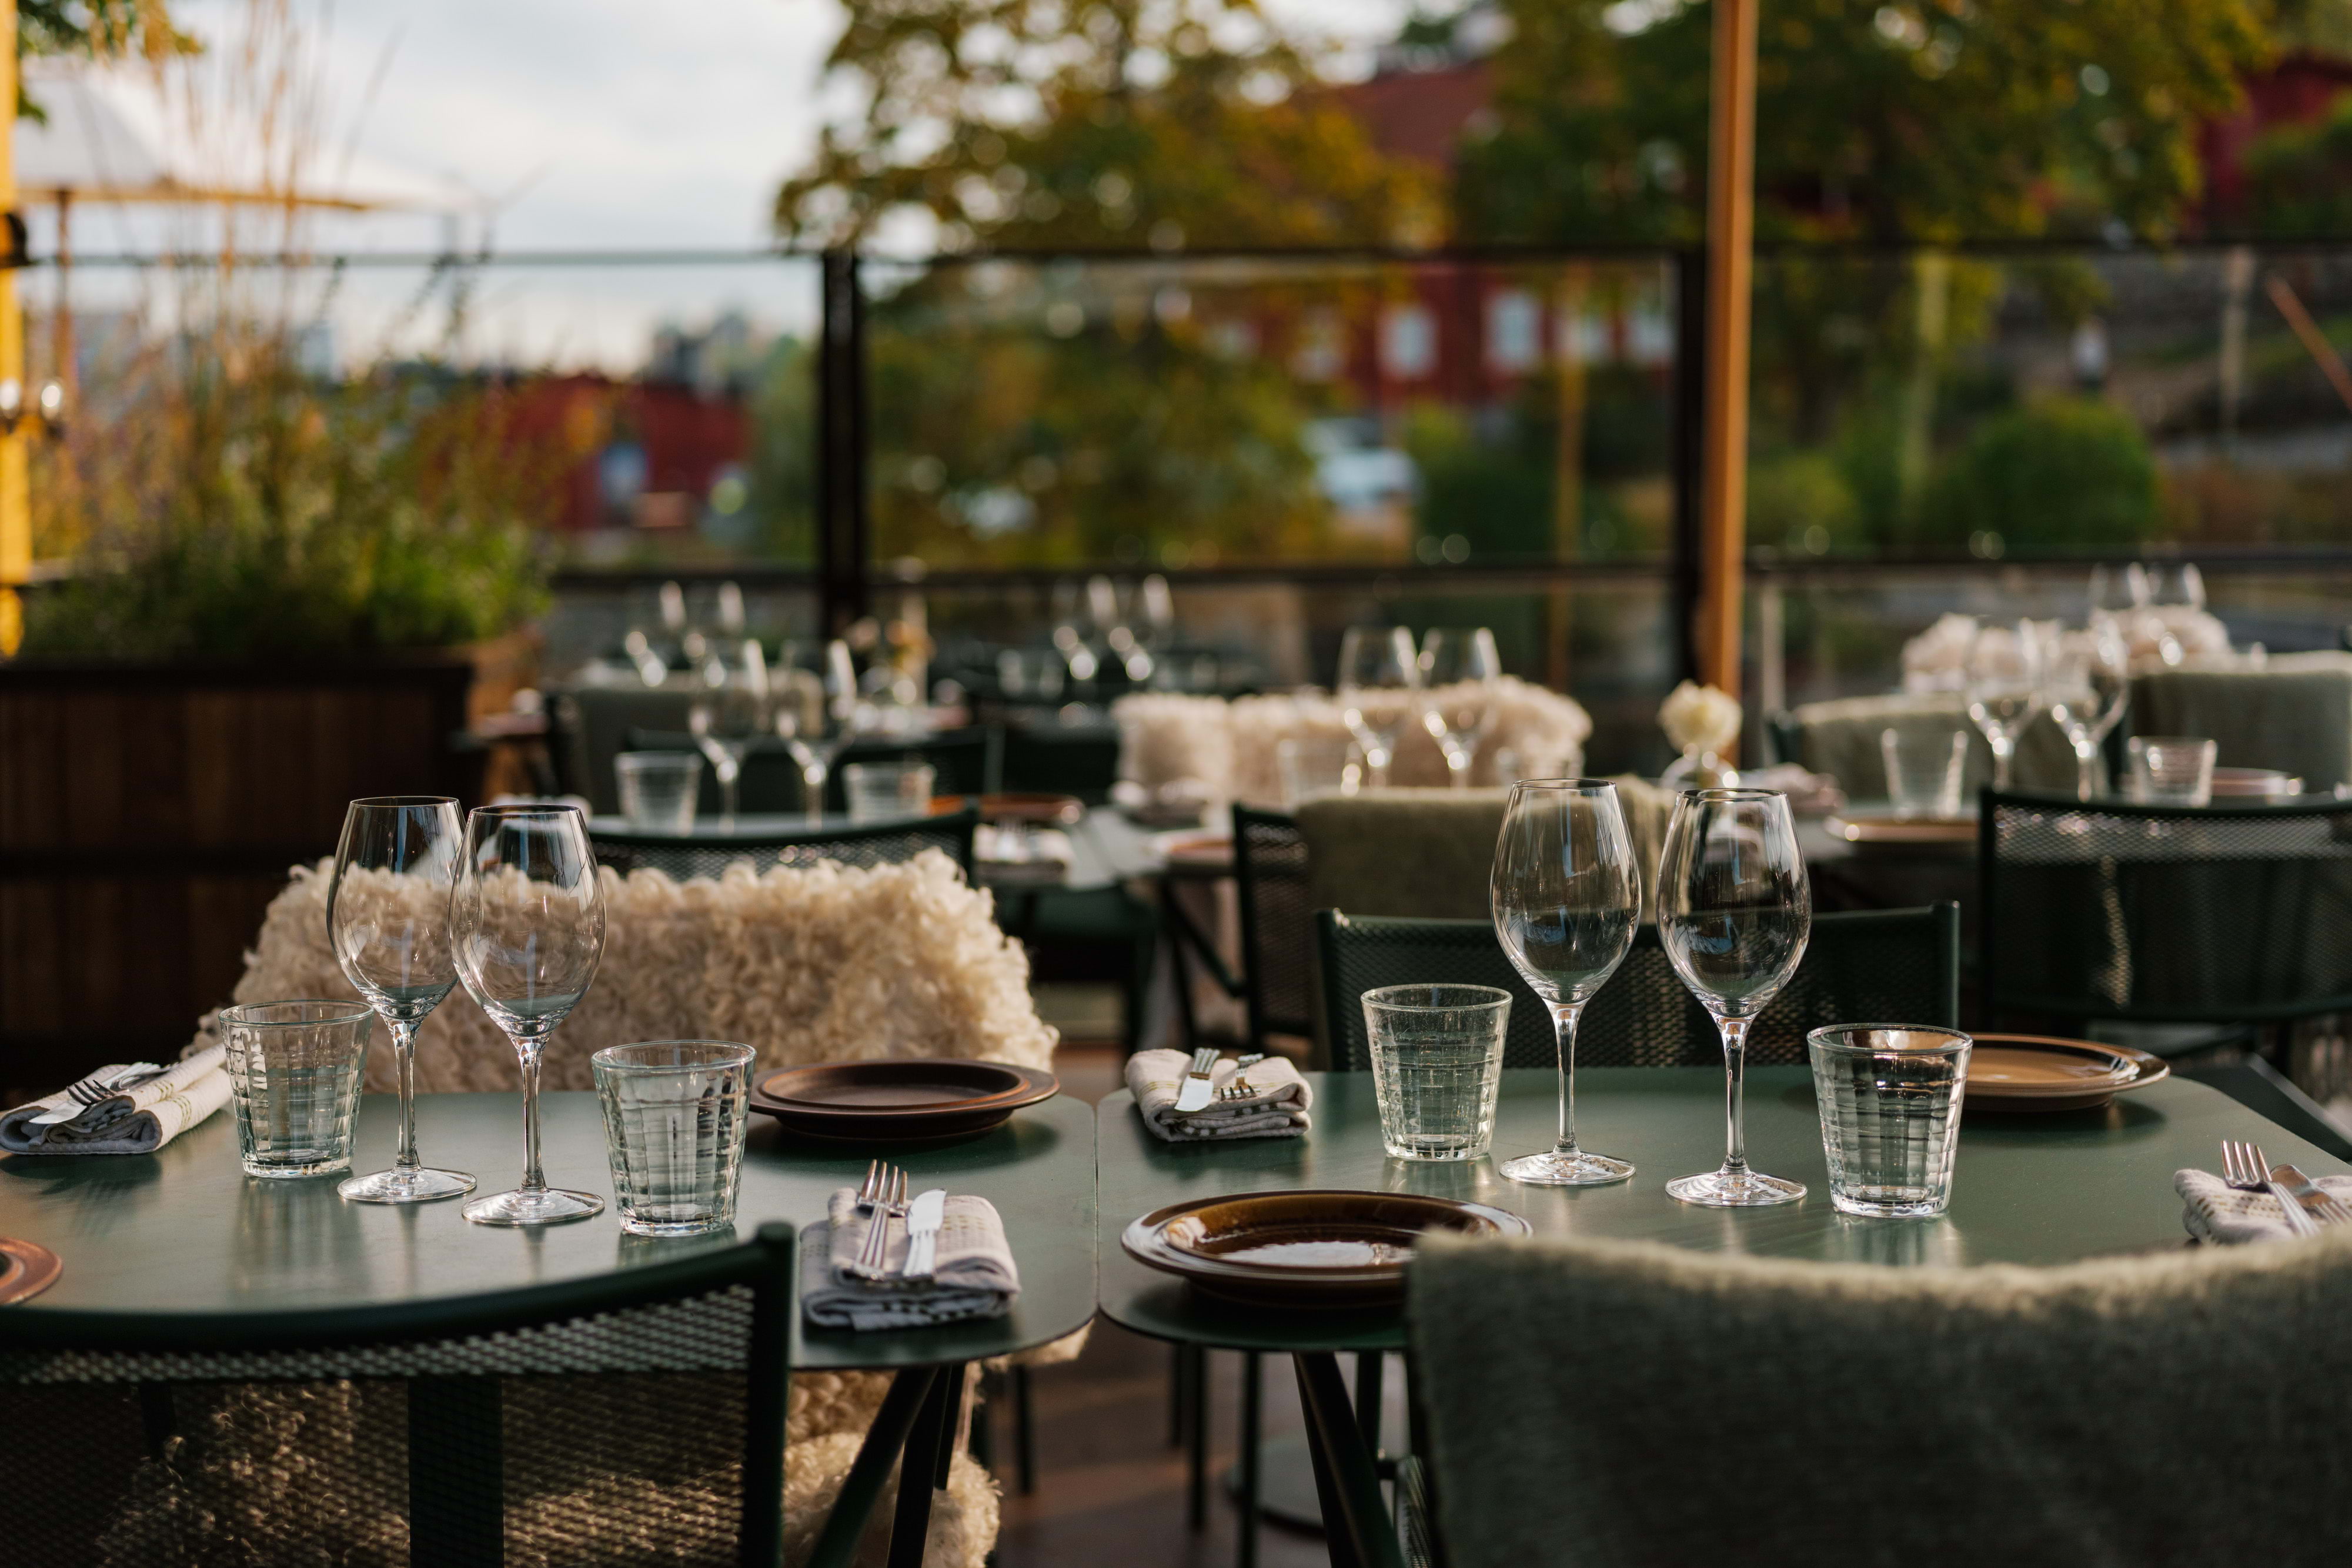 Restaurang Slipen – Brunch på Östermalm och Djurgården